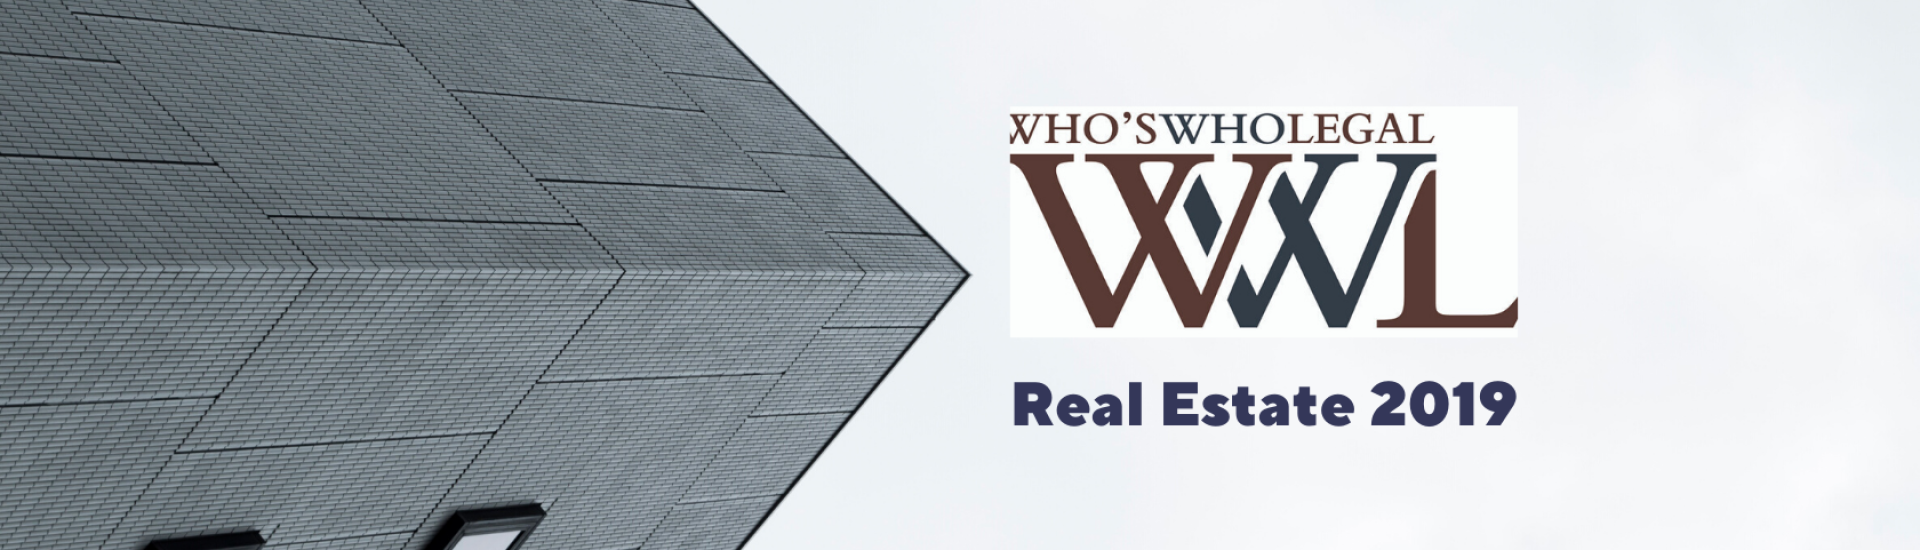 Ержан Есимханов вошел в список лучших юристов рейтинга WWL 2019: Real Estate